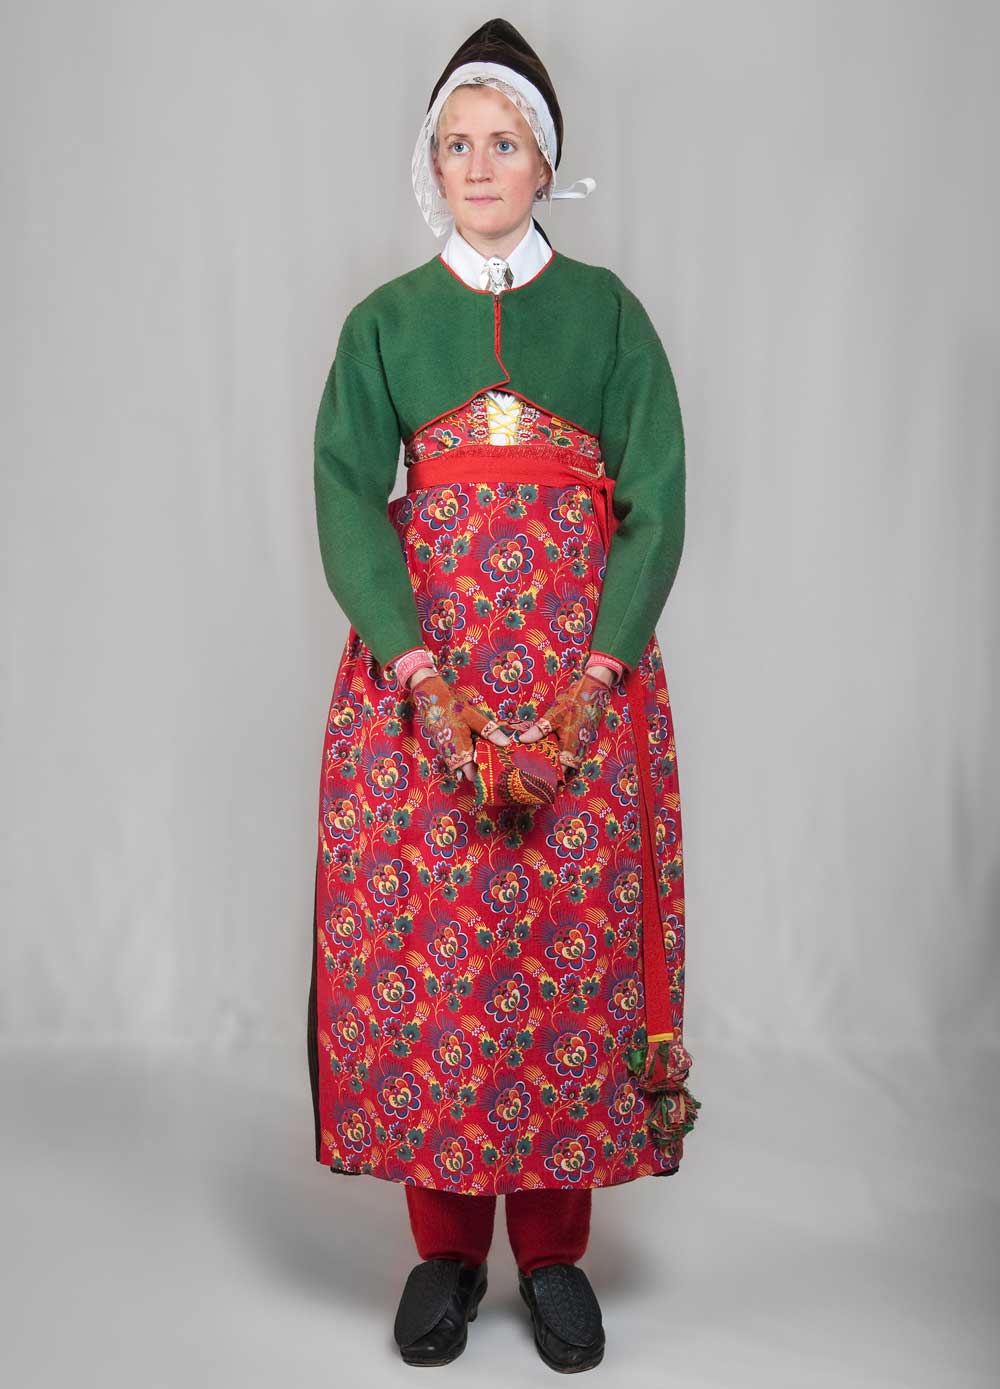 Kvinna med rödblommigt förkläde och grön övertröja.